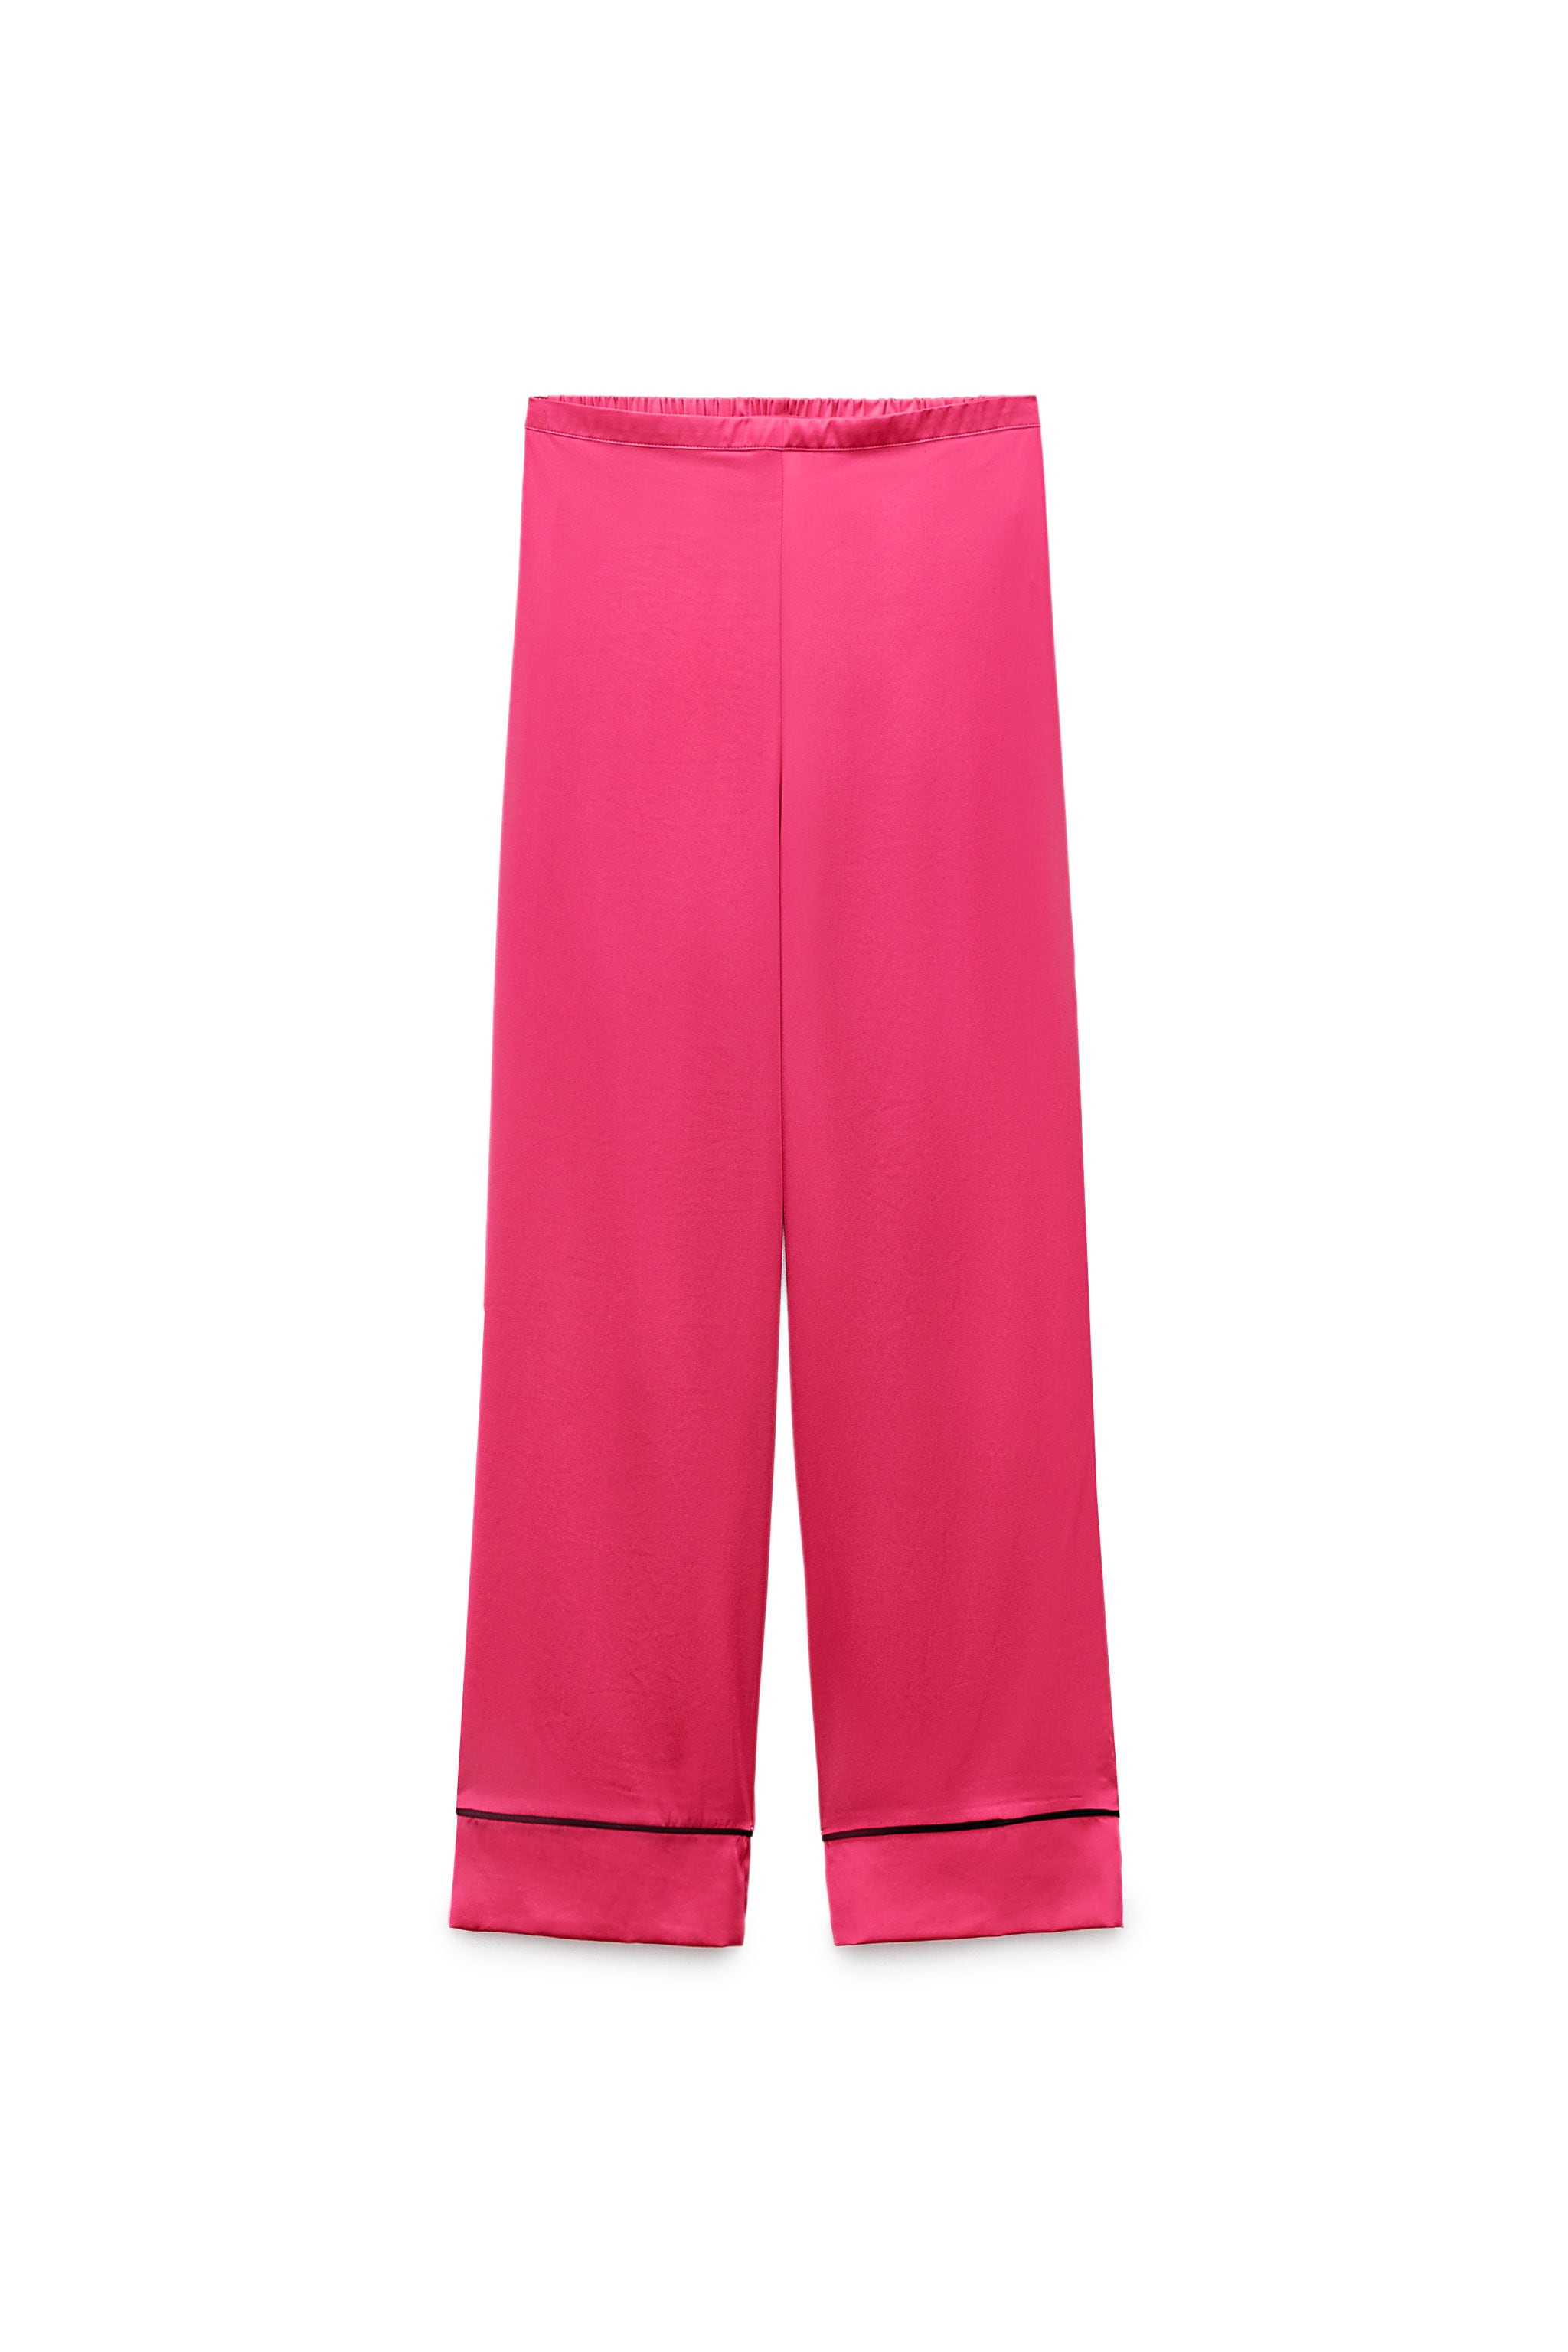 Zara Girls Hot Pink Pants